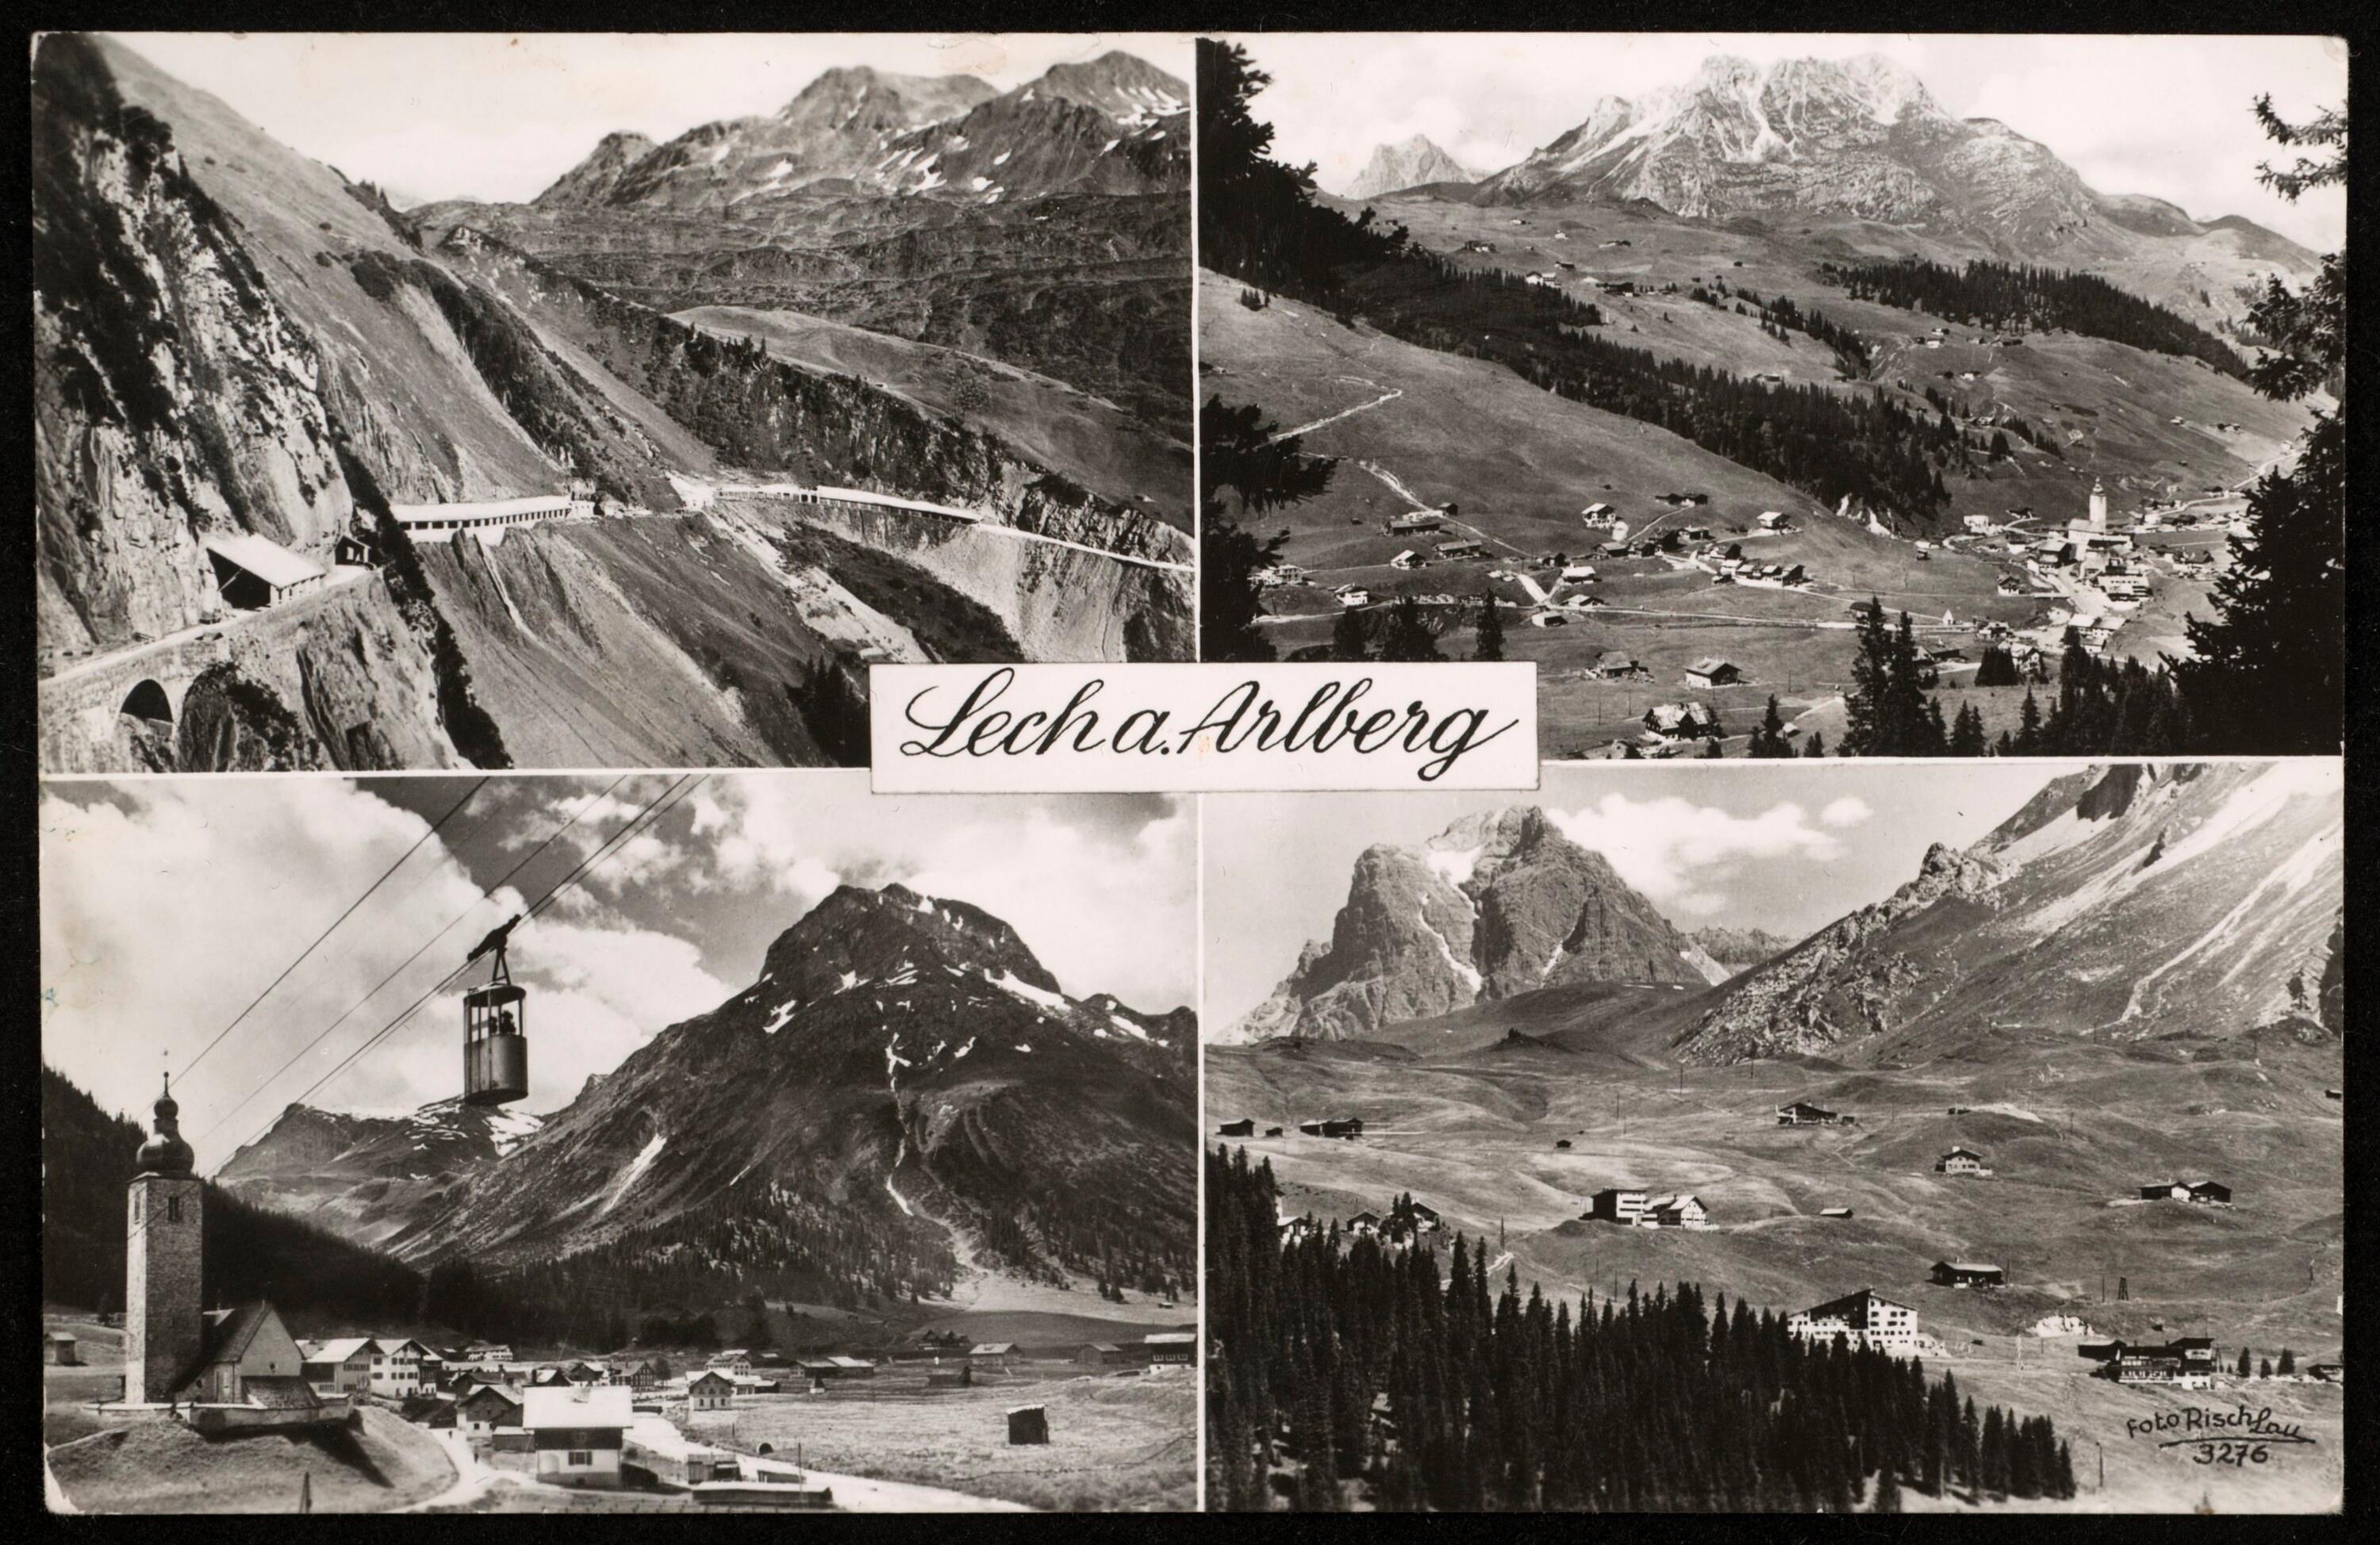 Lech a. Arlberg></div>


    <hr>
    <div class=